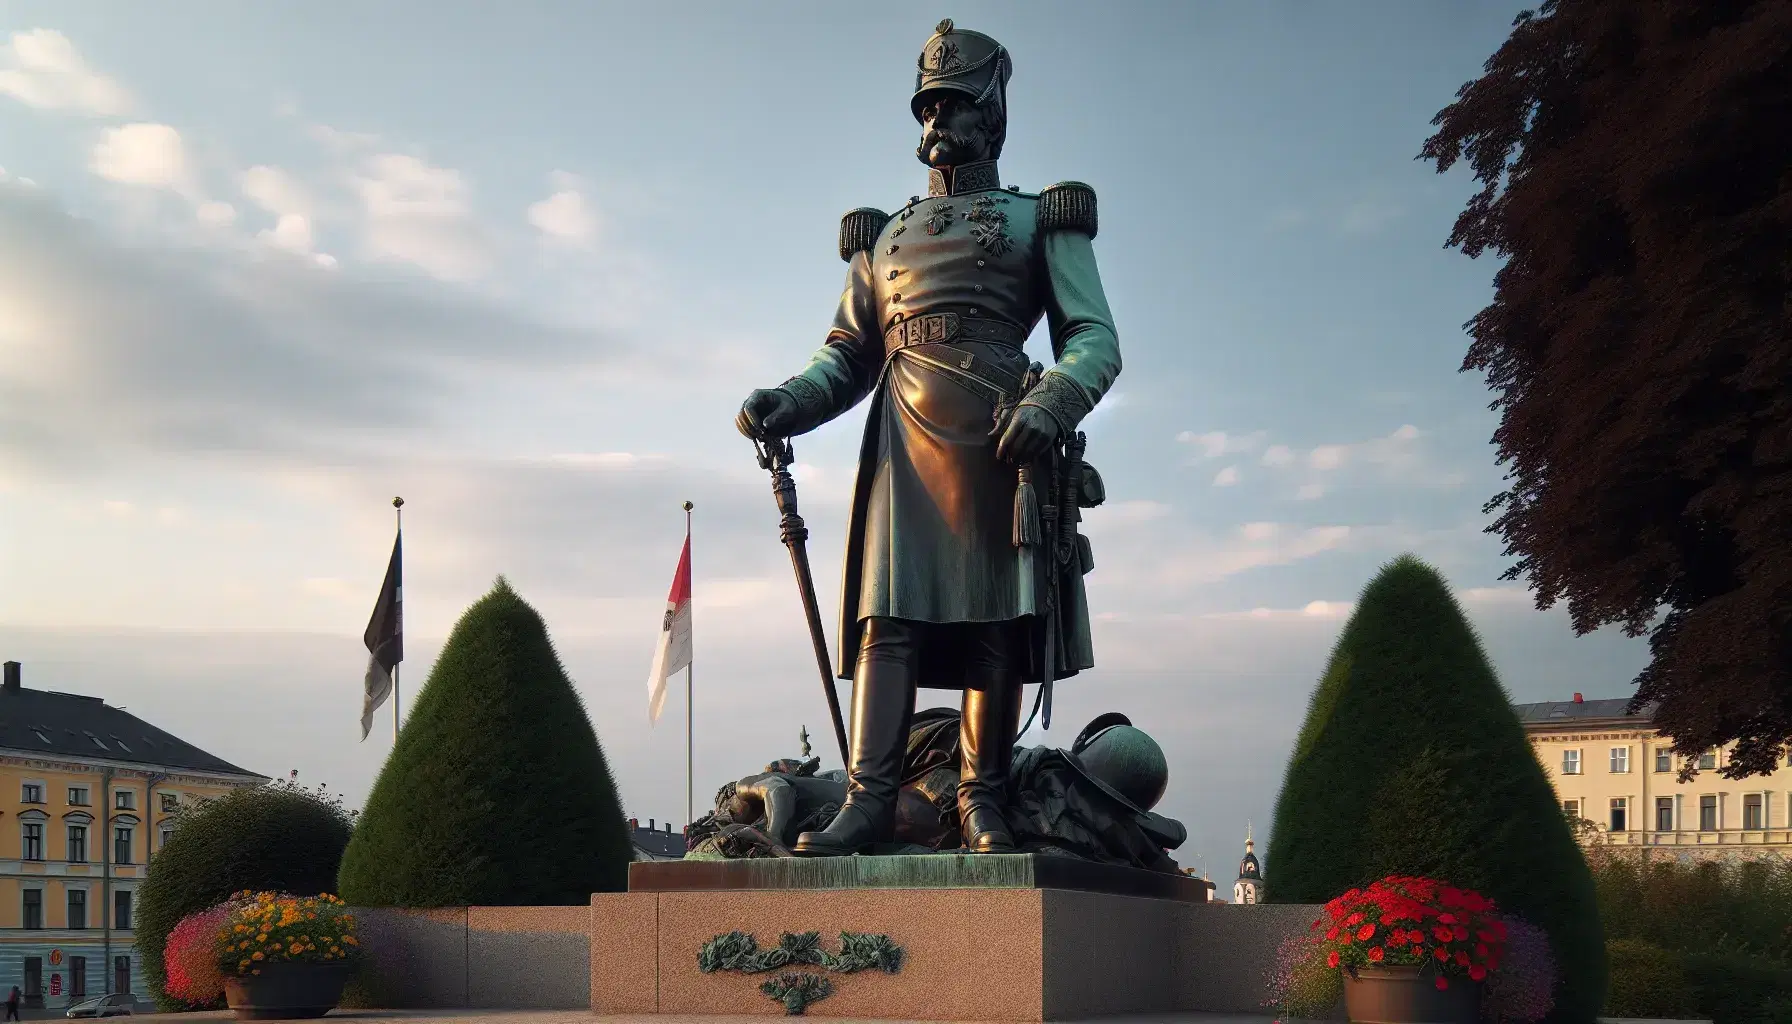 Estatua de bronce de hombre con uniforme militar del siglo XIX y casco Pickelhaube, sosteniendo un bastón, sobre pedestal de piedra, con cielo azul al atardecer y jardín florido.